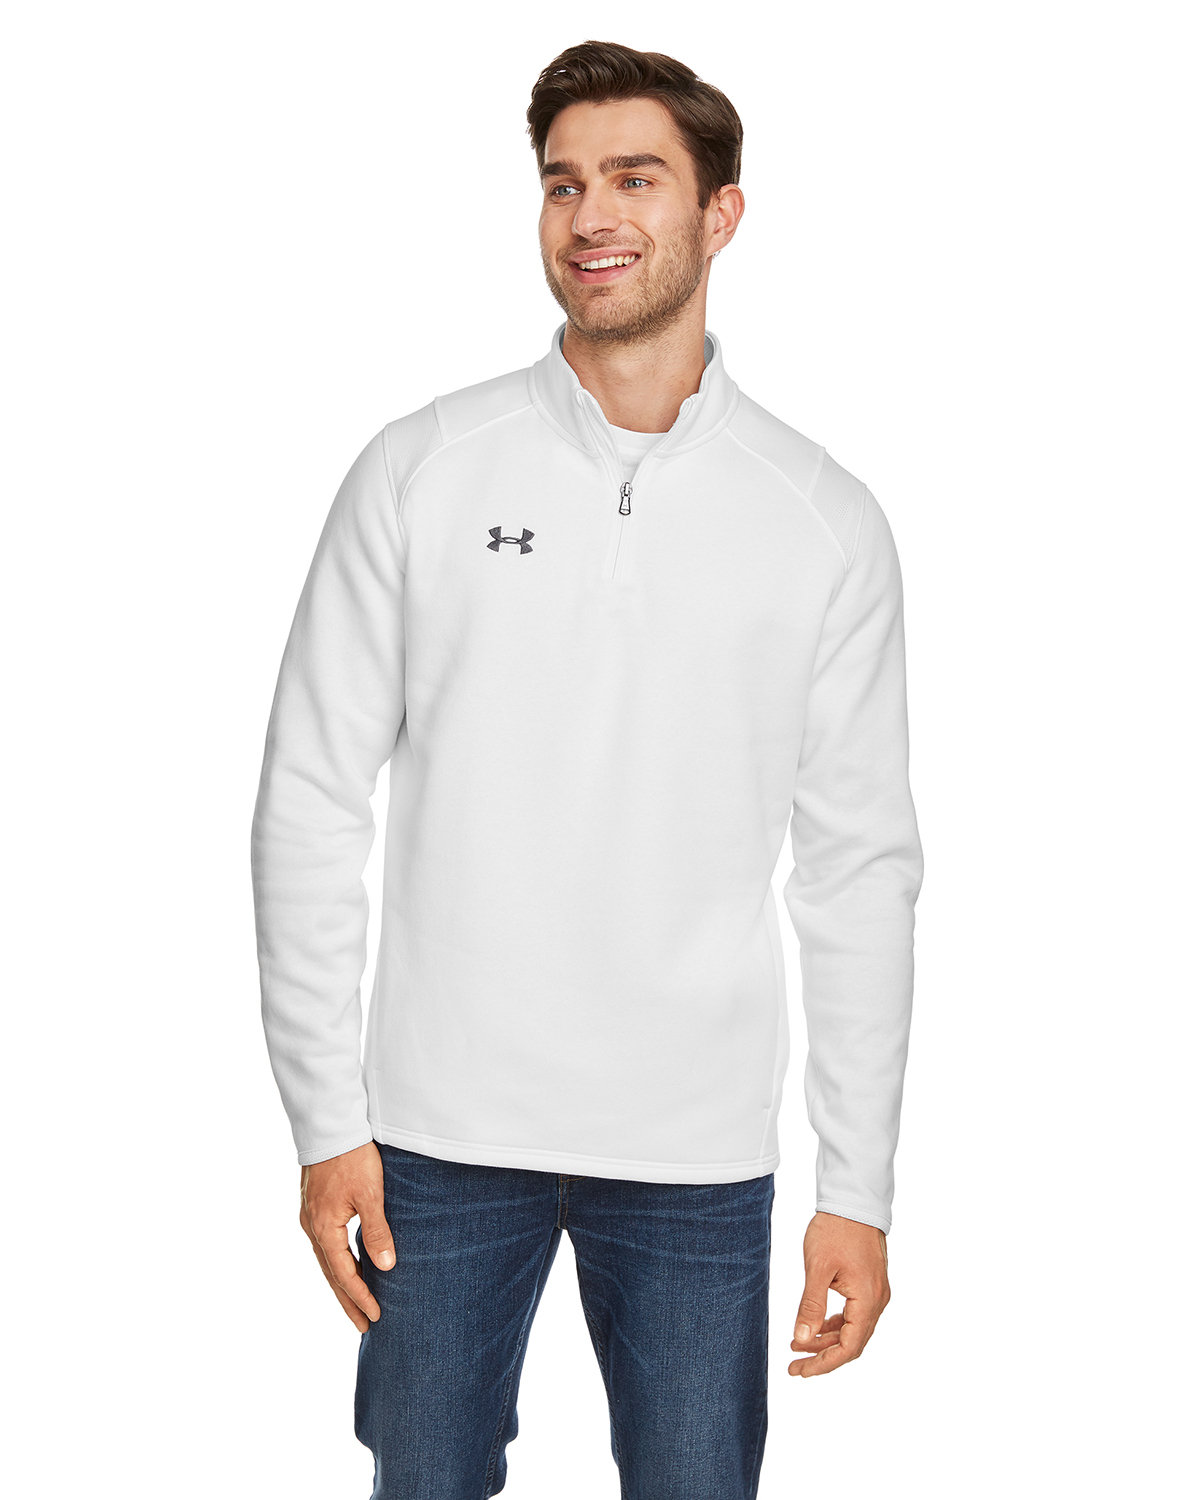 Buy Mens Hustle Quarter-Zip Pullover Sweatshirt - Under Armour Online ...